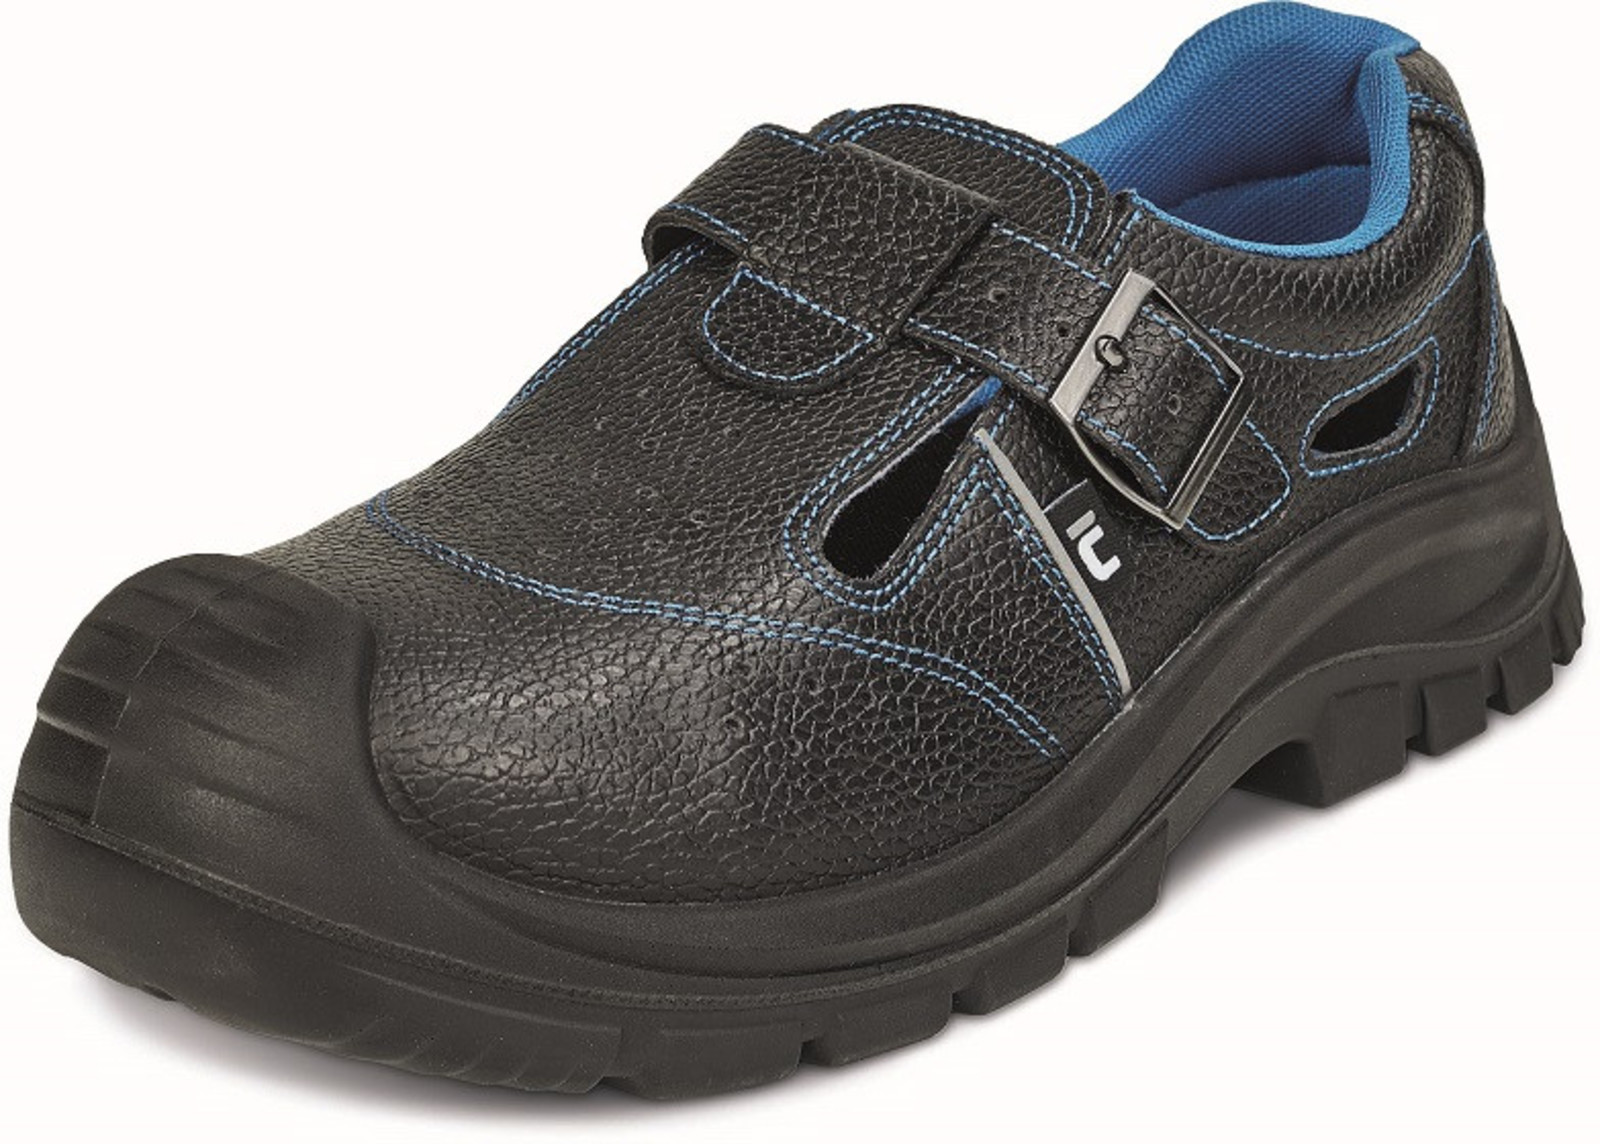 Bezpečnostné sandále Raven XT S1 SRC - veľkosť: 44, farba: čierna